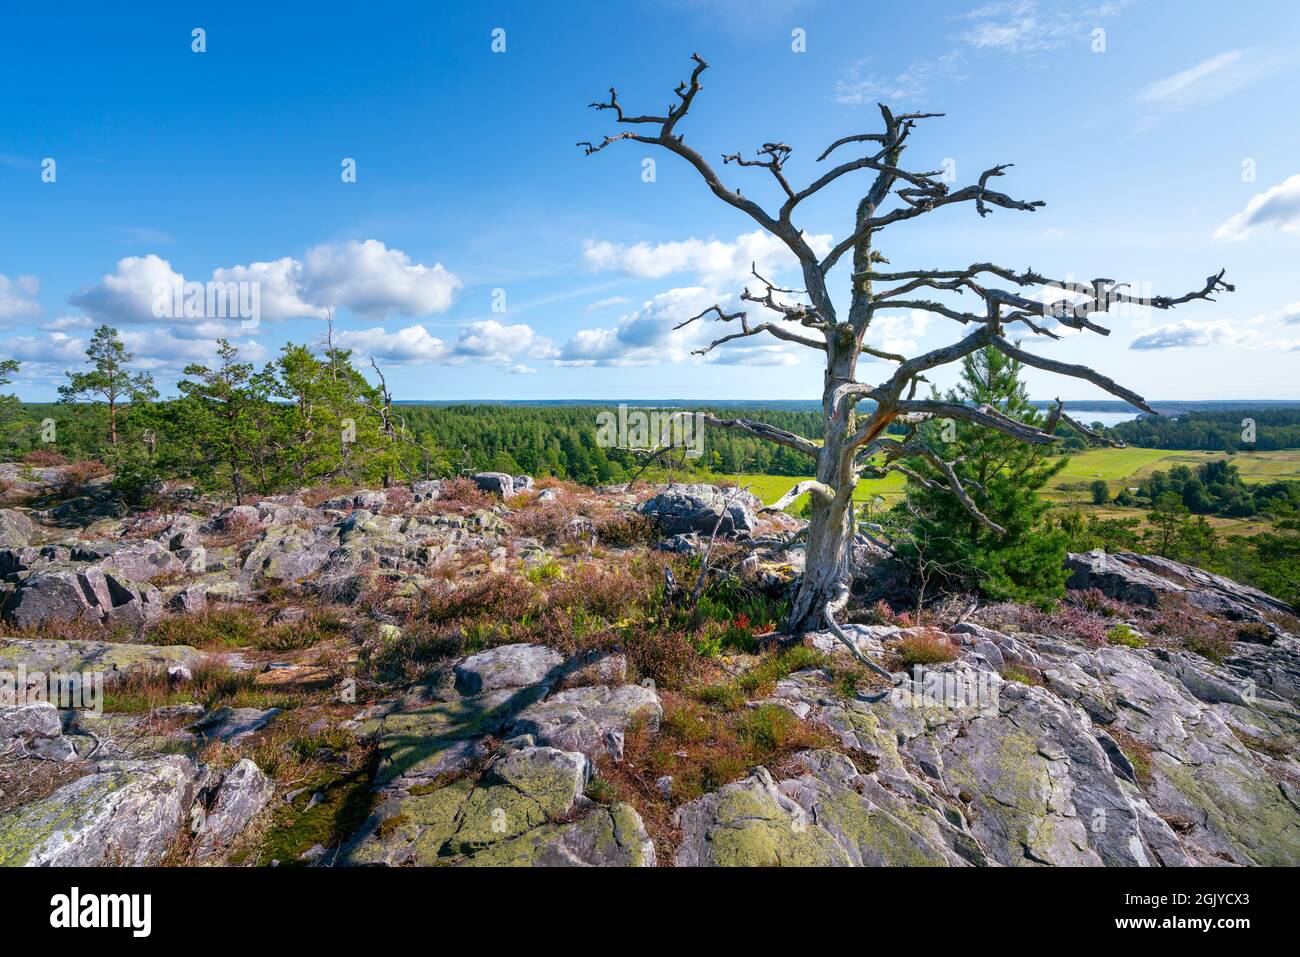 Bellissimo albero morto nel mezzo della riserva naturale Segersgarde in Svezia. Splendida giornata estiva nel pittoresco paesaggio della Svezia meridionale Foto Stock